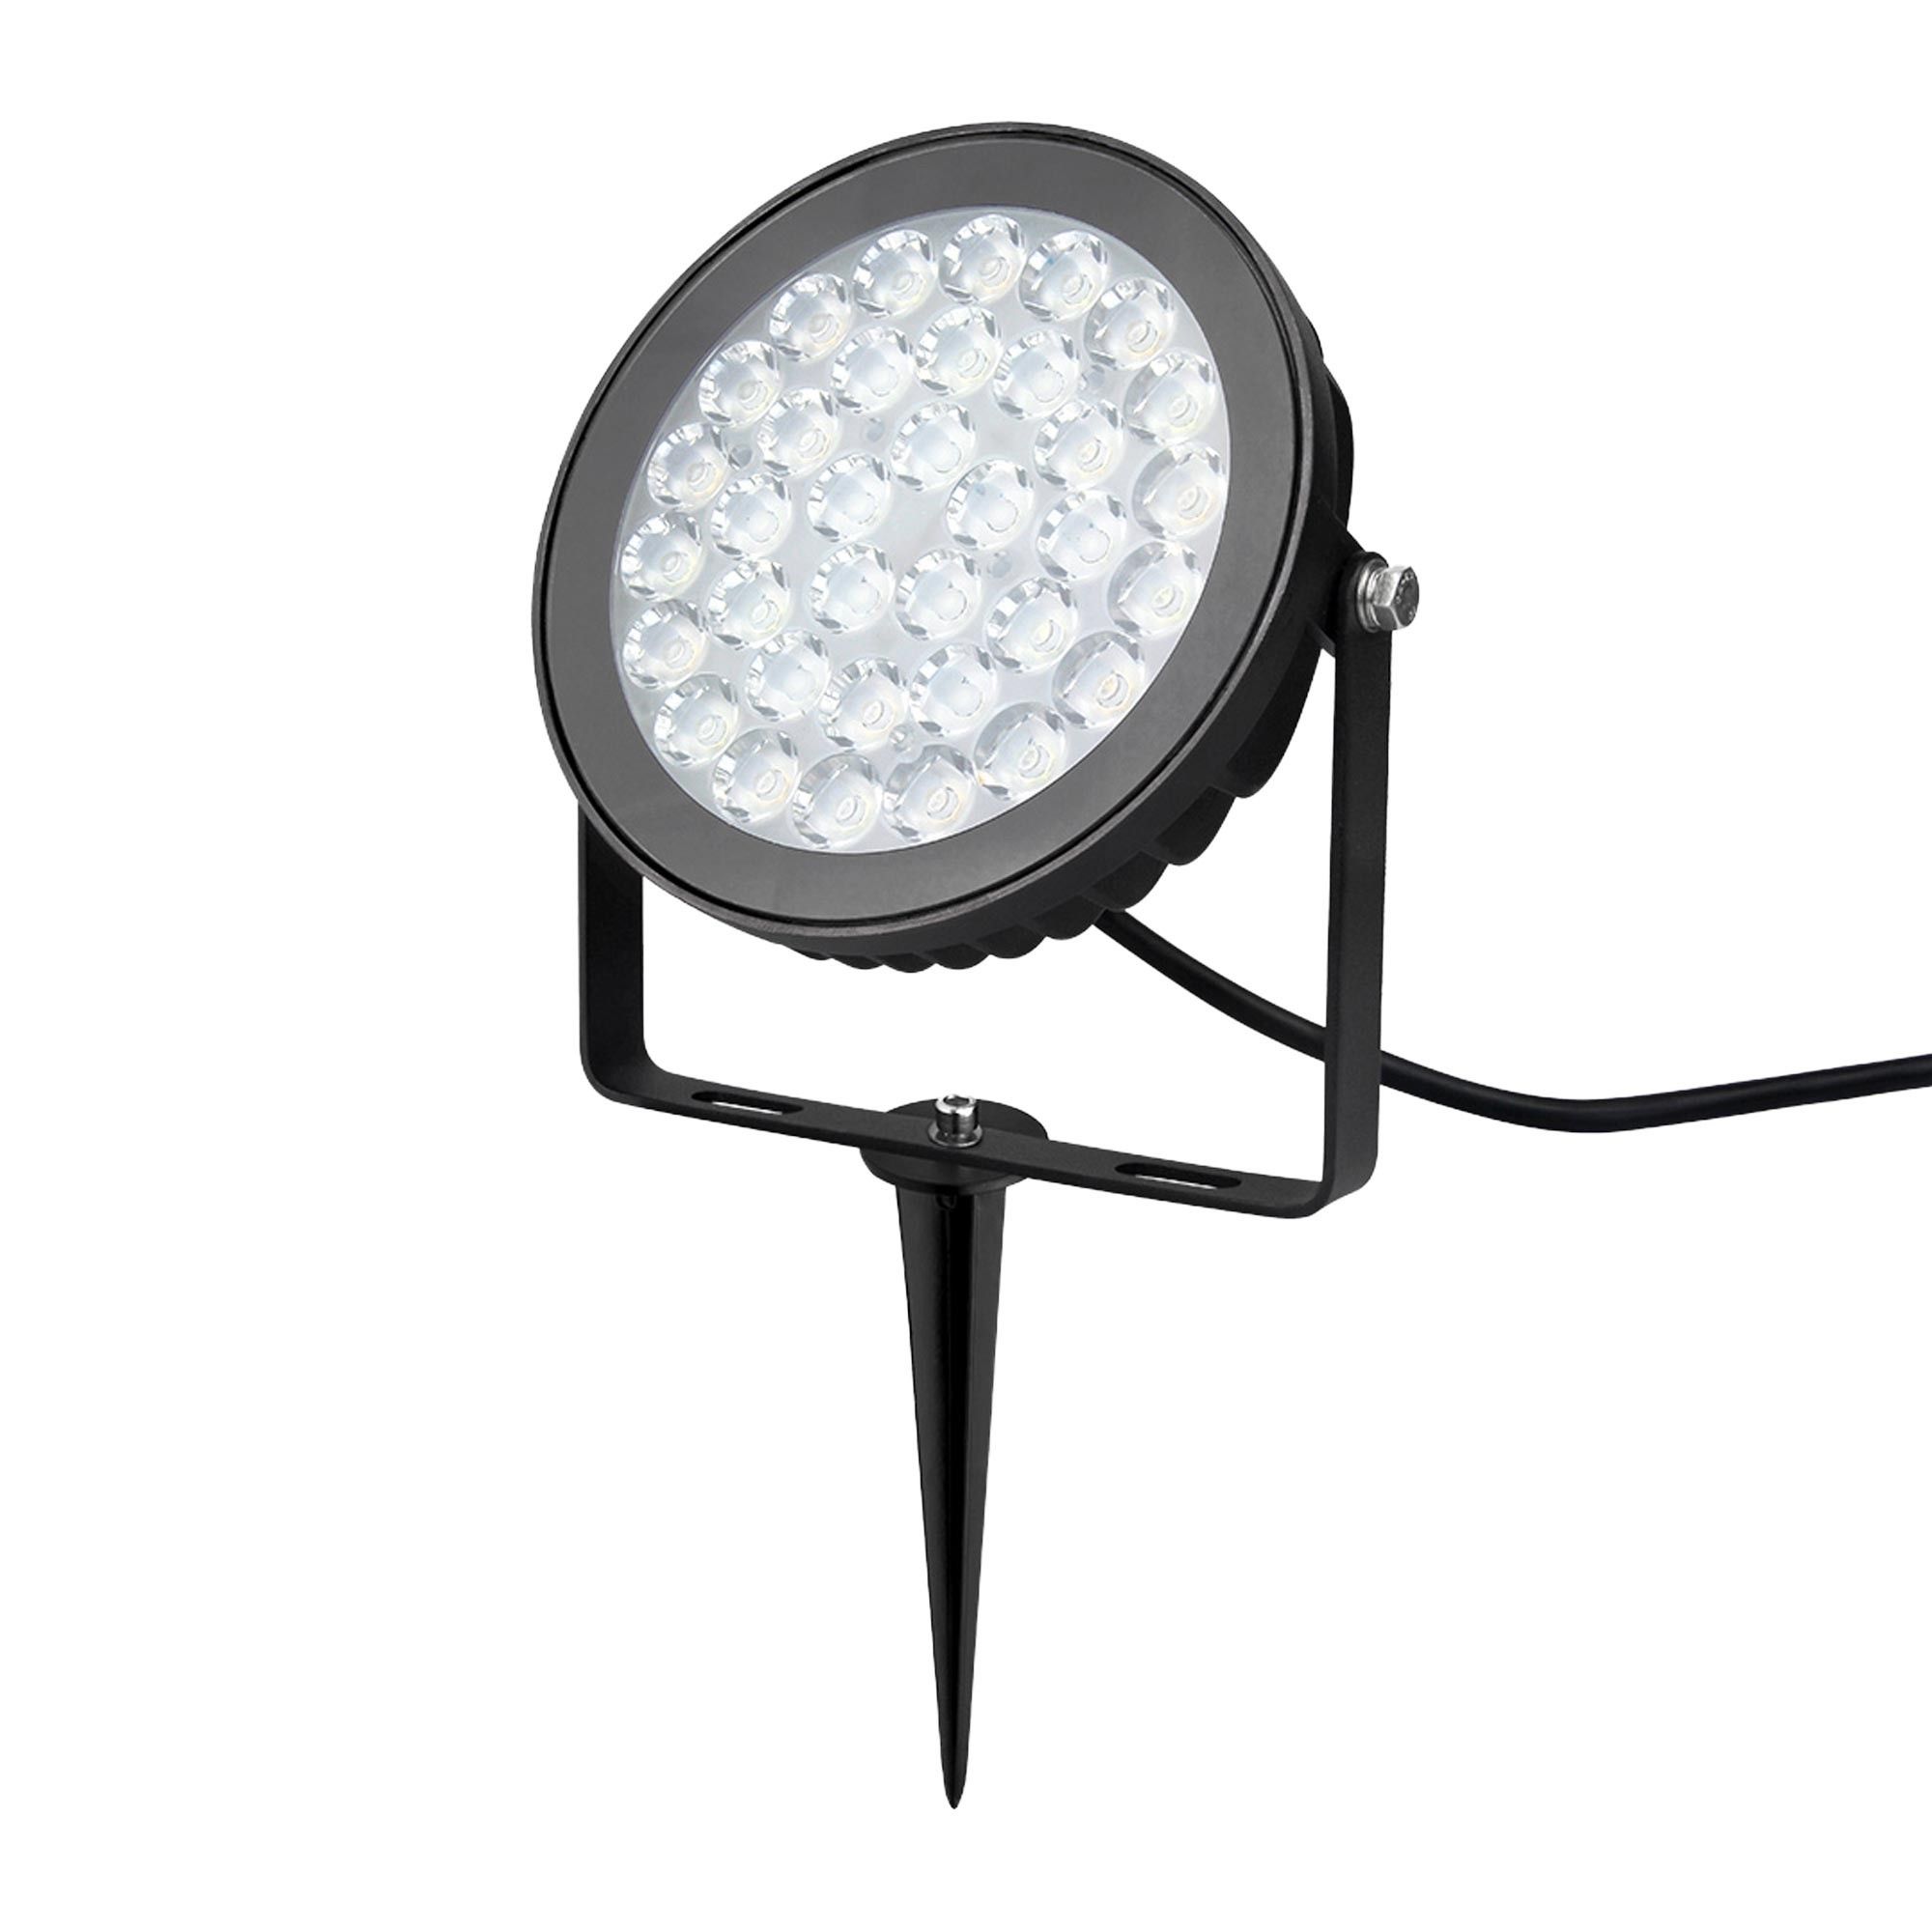 projecteur-spot-rgb-couleur-led-exterieur-lumiere-eclairage-lampe-ampoule- 12v-ip67-telecommande